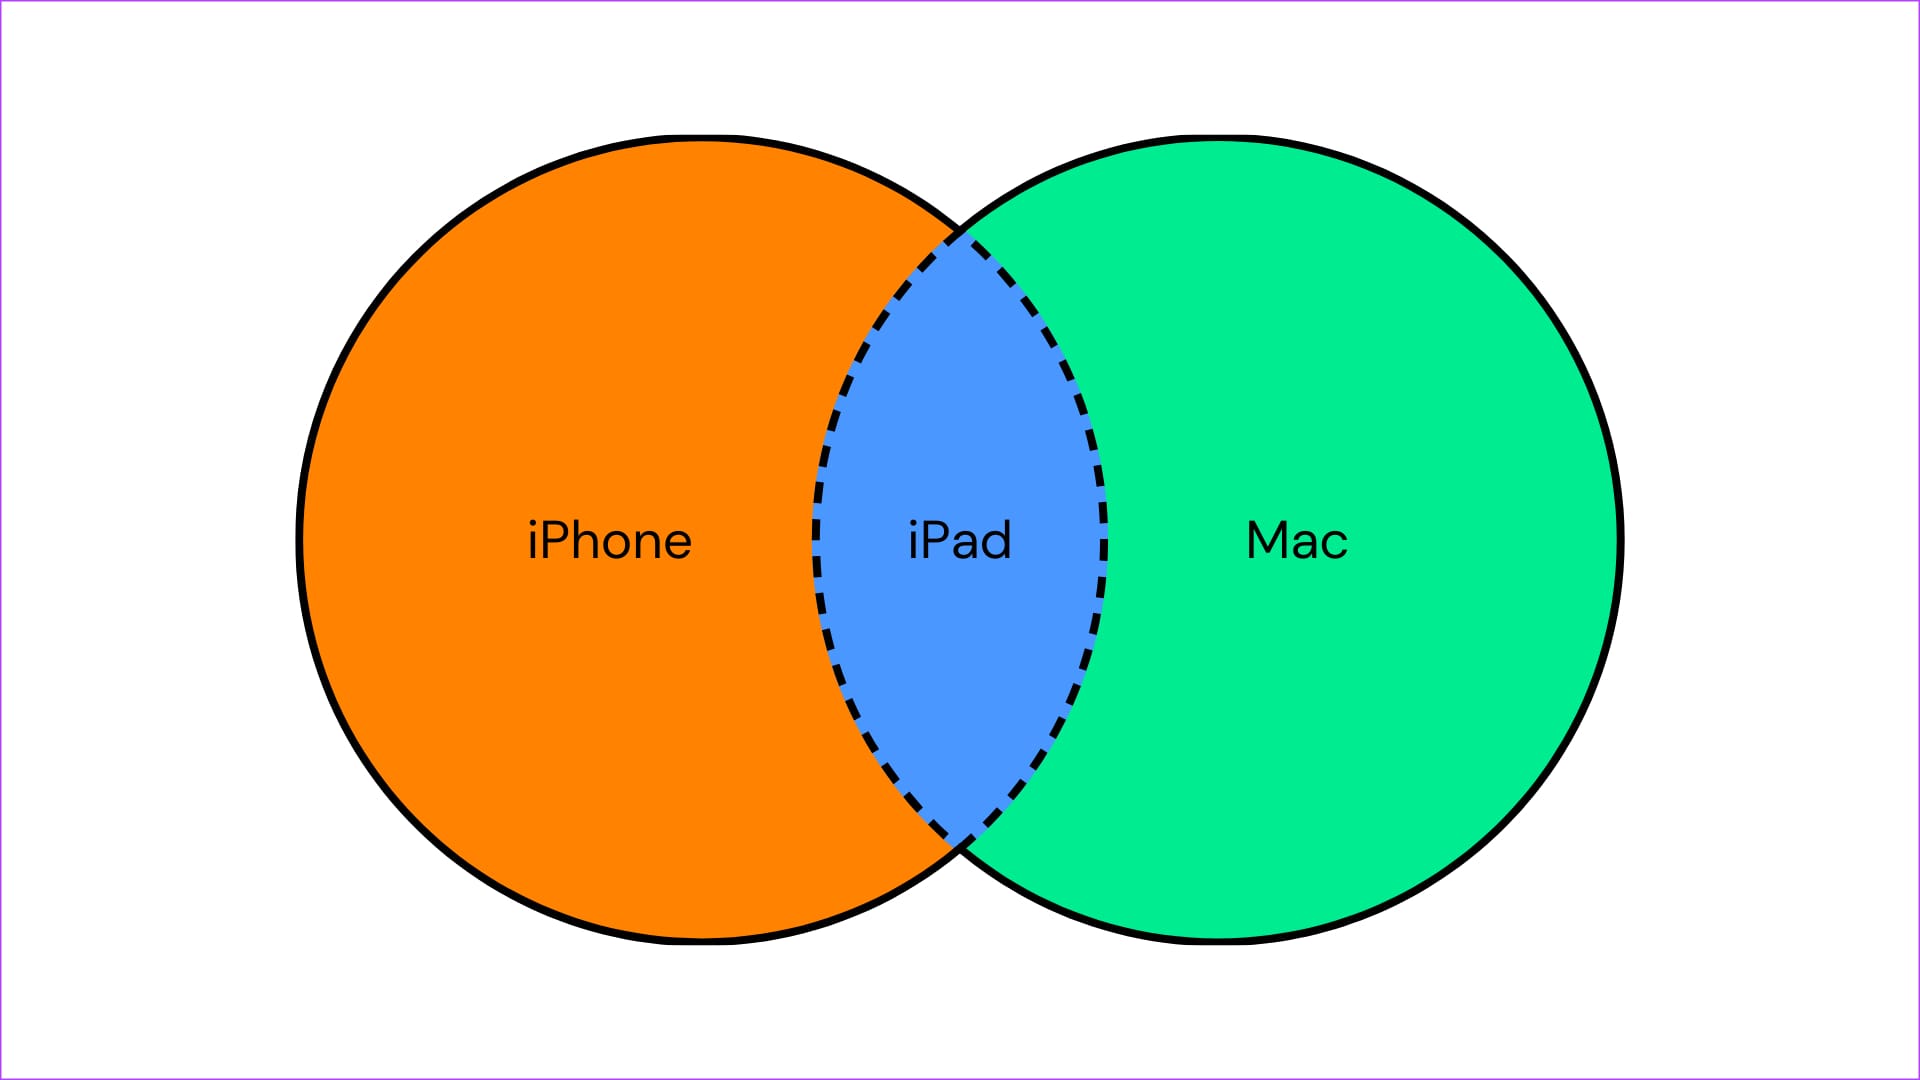 iPad venn diagram